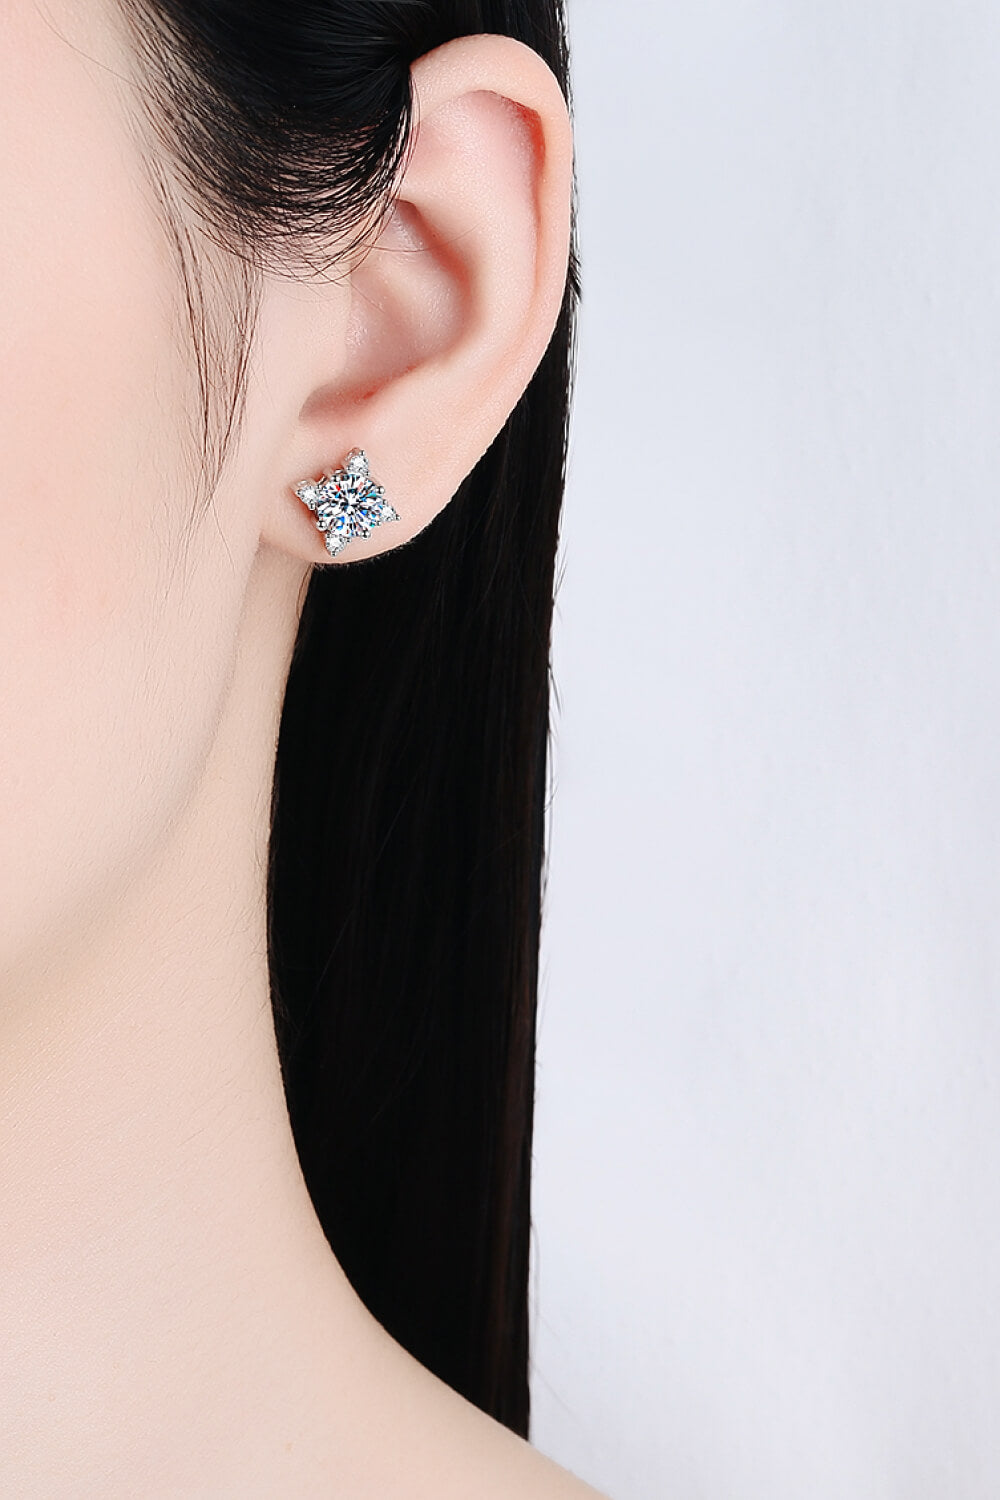 Star shaped 2 Carat Moissanite Stud Earrings